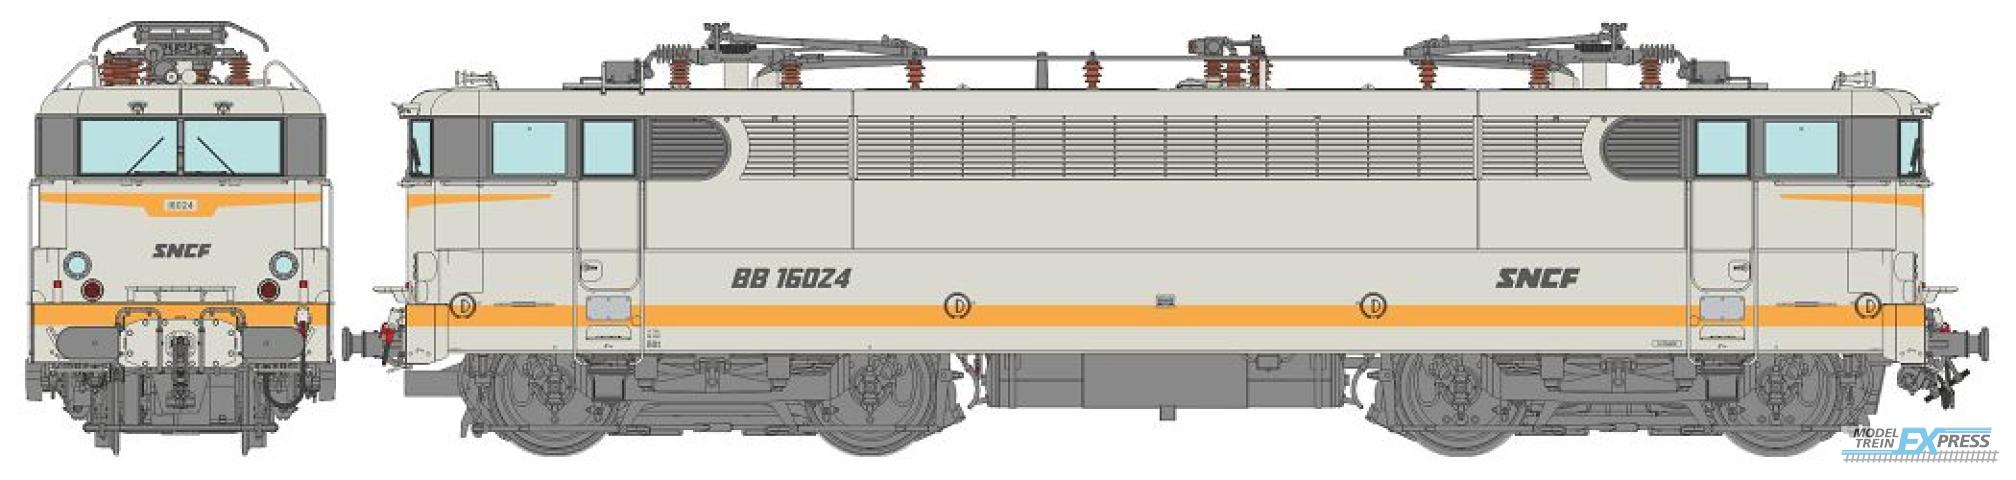 REE models MB-143 BB 16024 Grey livery downstroke SNCF logo, Preserved loco Era V - ANALOG DC